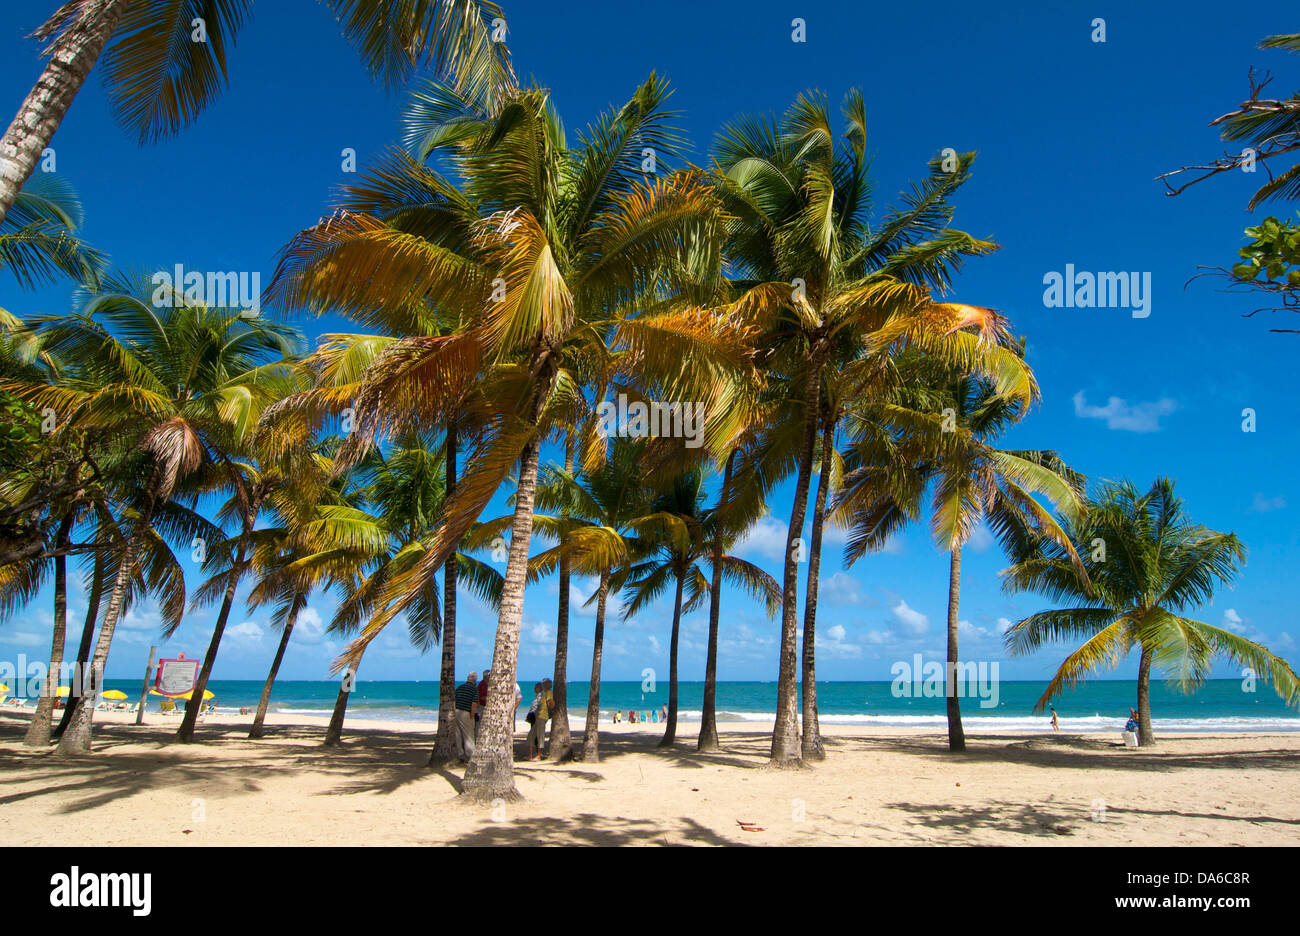 Puerto Rico, Caribbean, Greater Antilles, Antilles, San Juan, Isla Verde Beach, palm beach, palm beaches, sand beach, sand beach Stock Photo